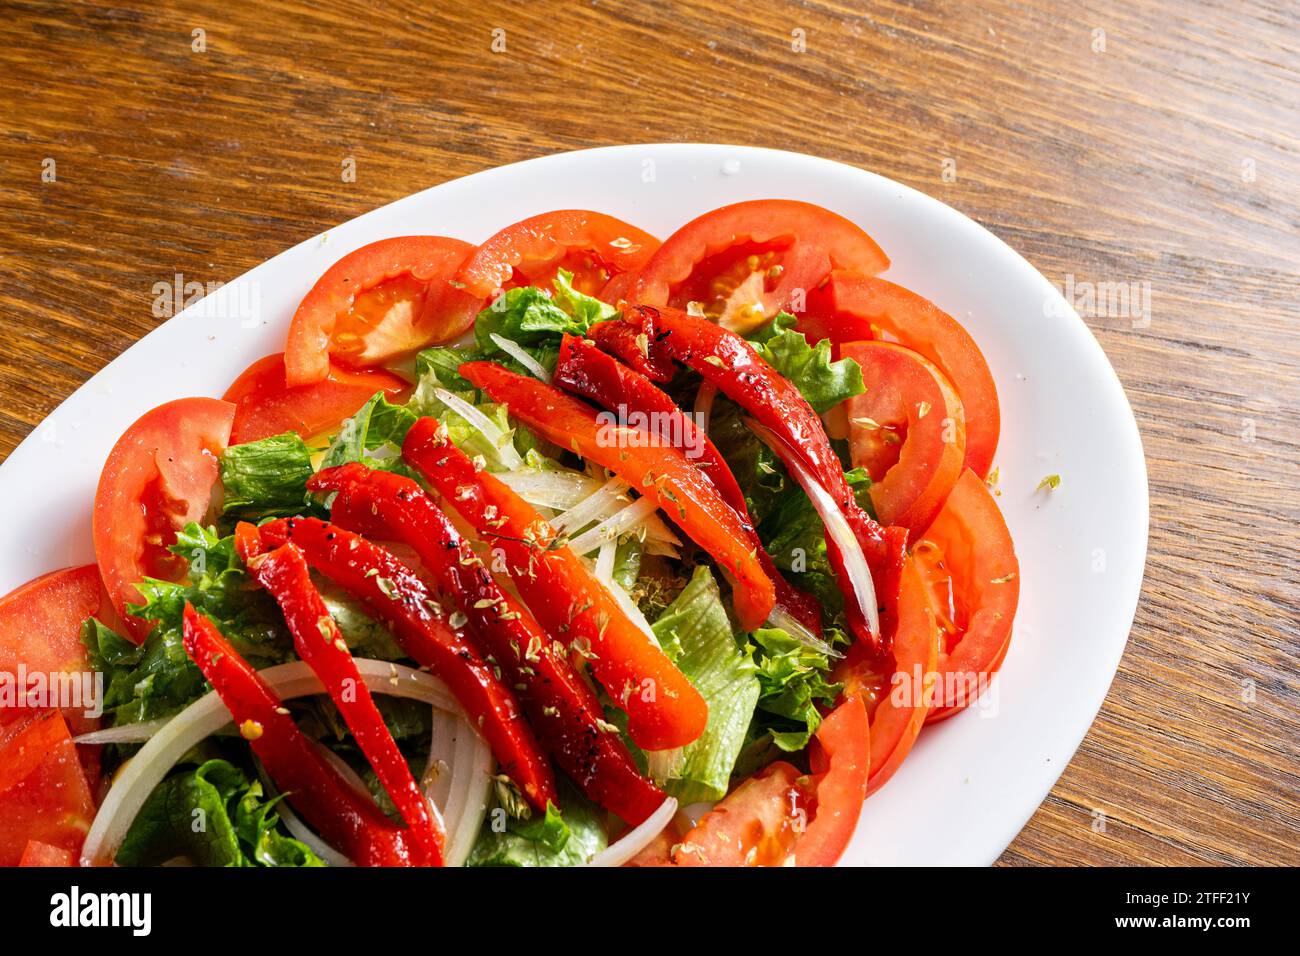 Salade fraîche avec laitue, tomates, oignons et poivrons rouges rôtis. Couleurs vives et ingrédients sains. Banque D'Images